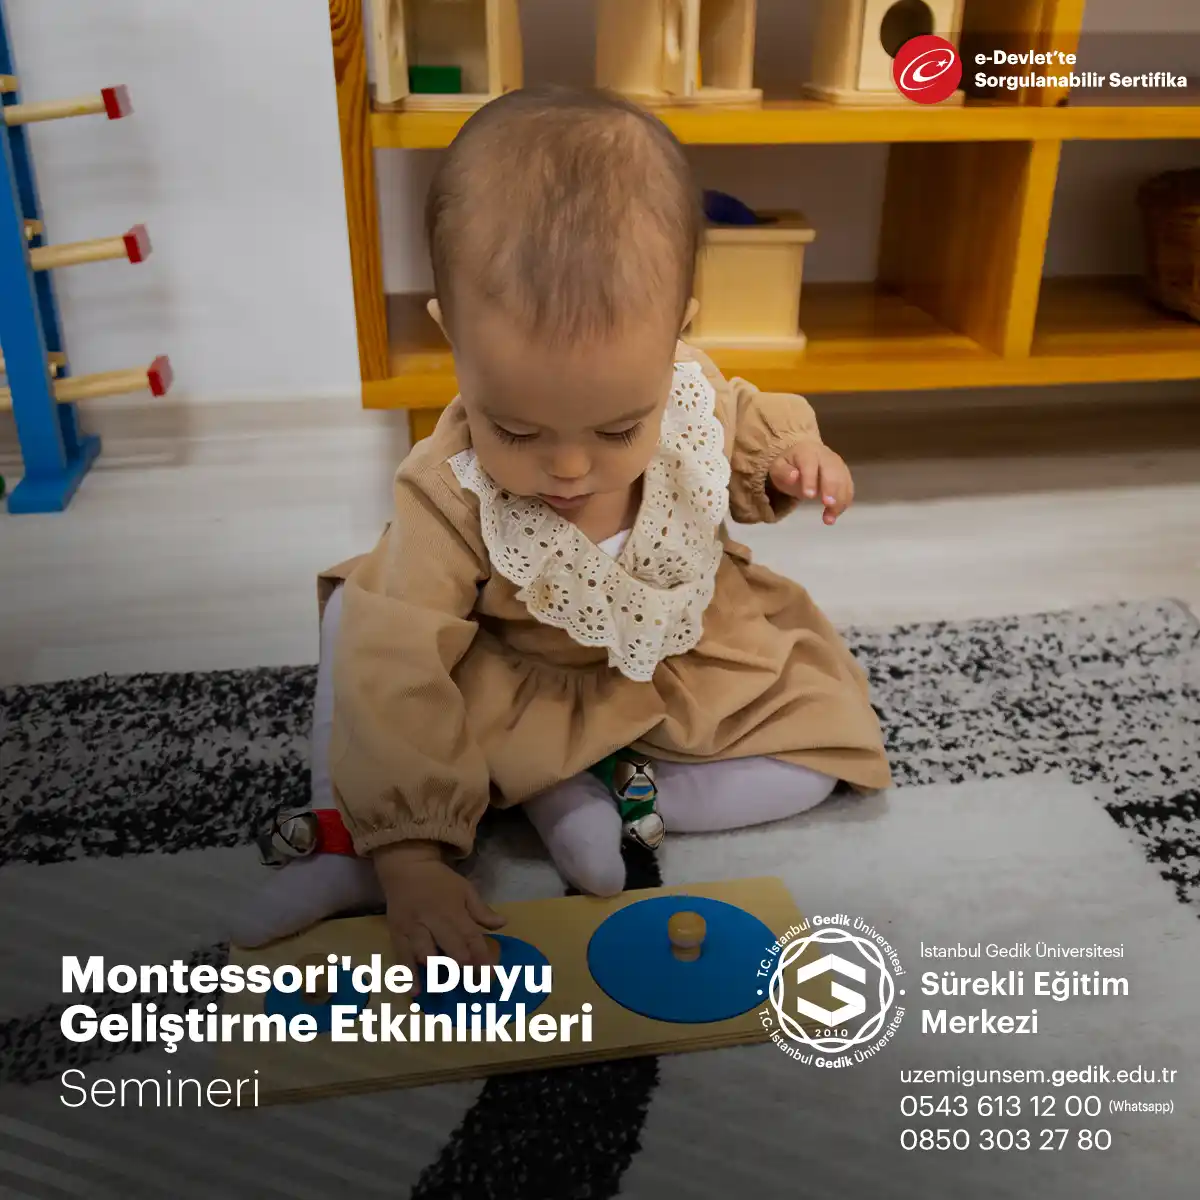 Montessori'de duyu geliştirme etkinlikleri, çocukların algıları keşfetmelerini ve duyularını kullanarak dünyayı deneyimlemelerini sağlar.